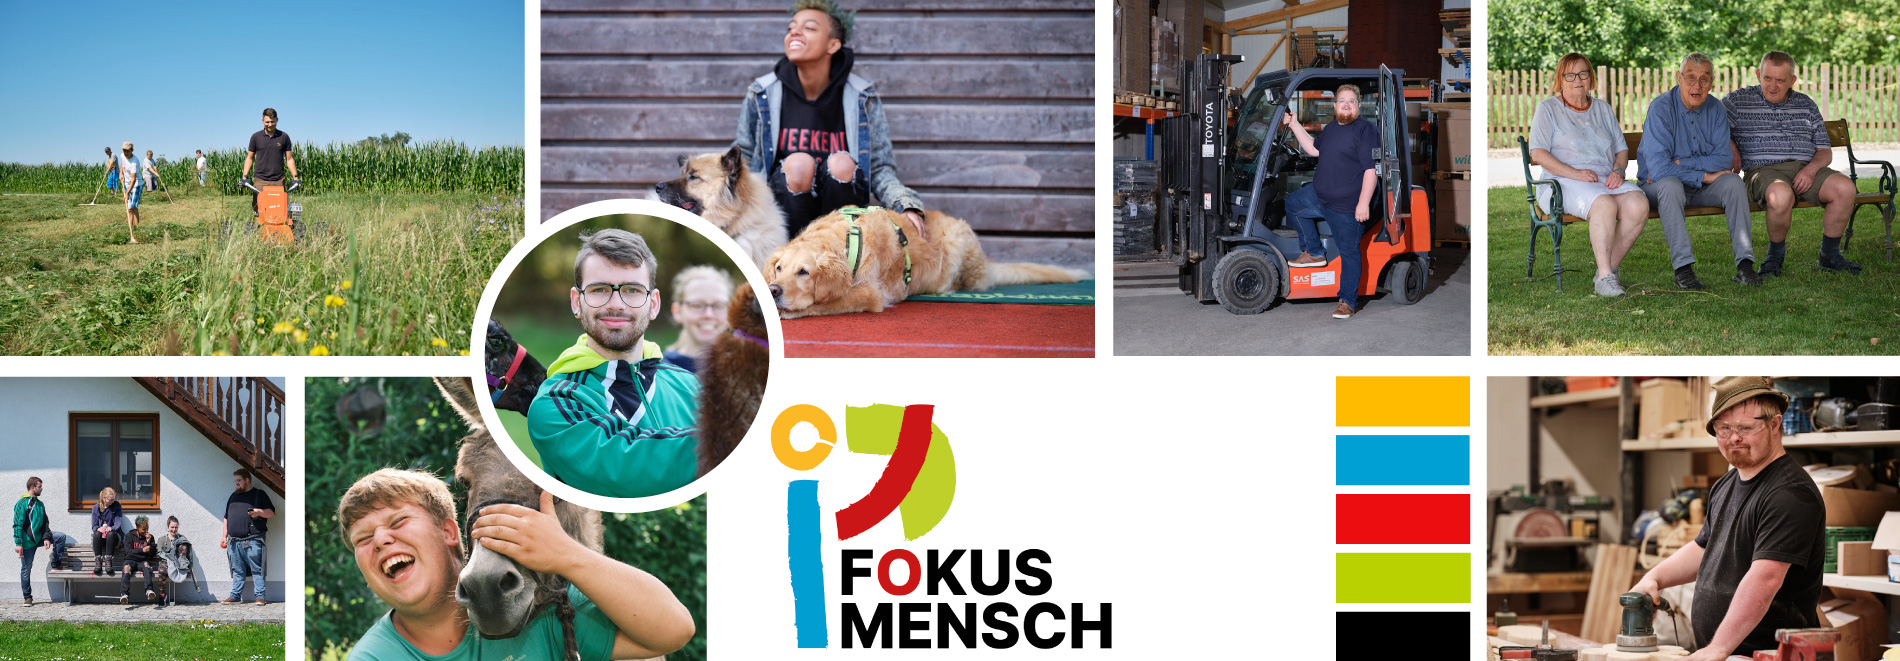 Foto-Collage mit Menschen und Logo von "Fokus Mensch"